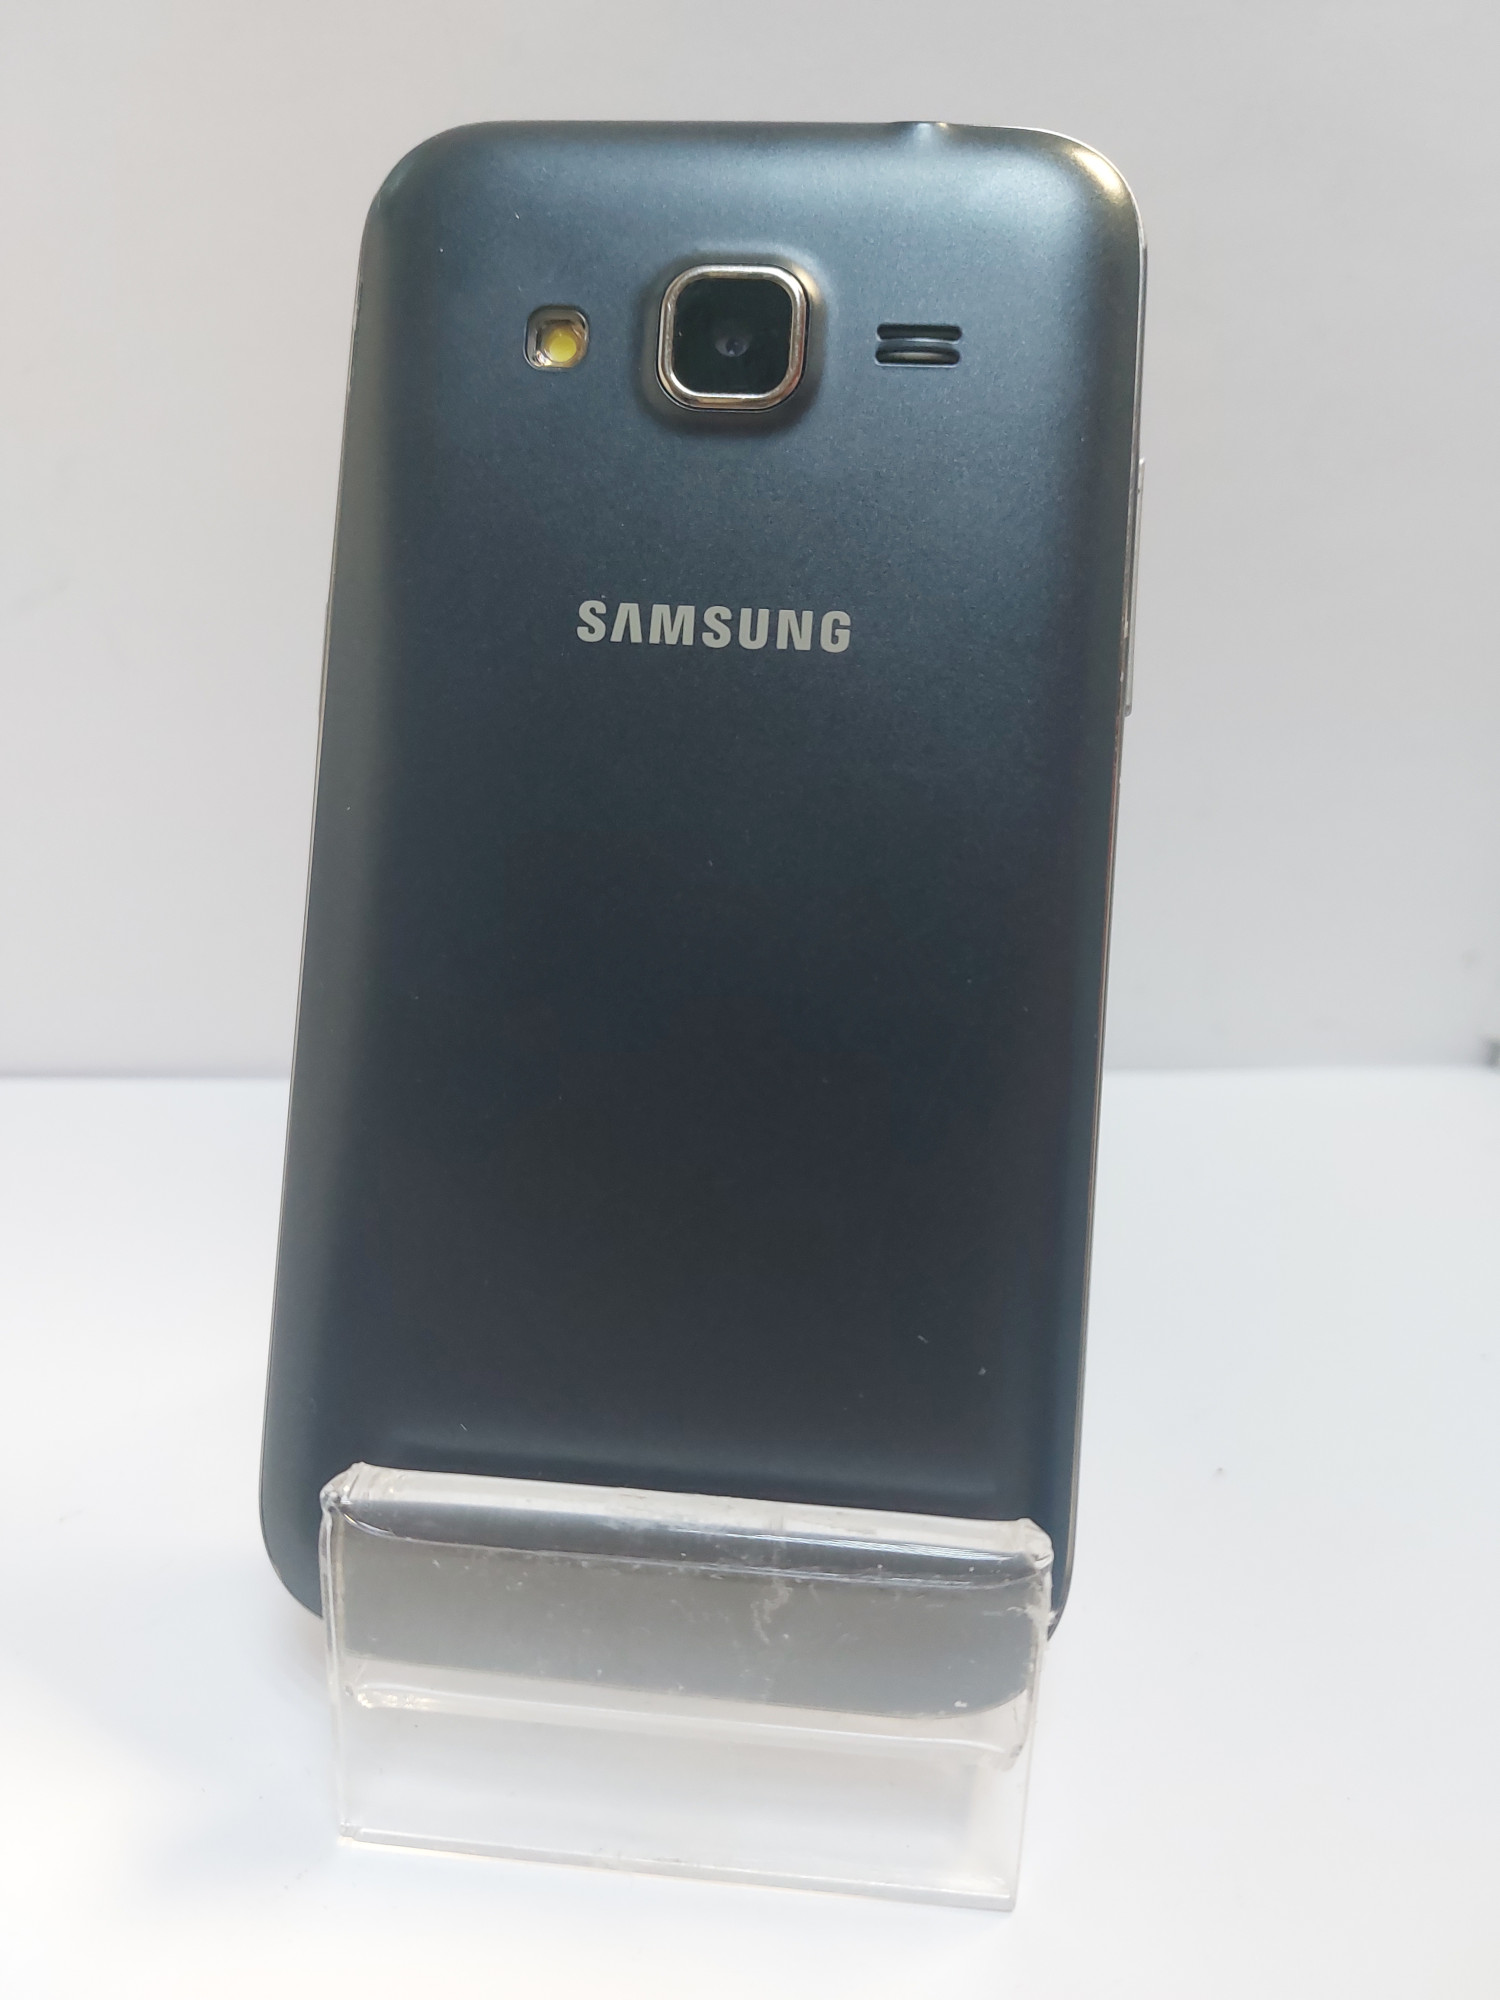 Samsung Galaxy Core Prime (SM-G360H) 1/8Gb 2